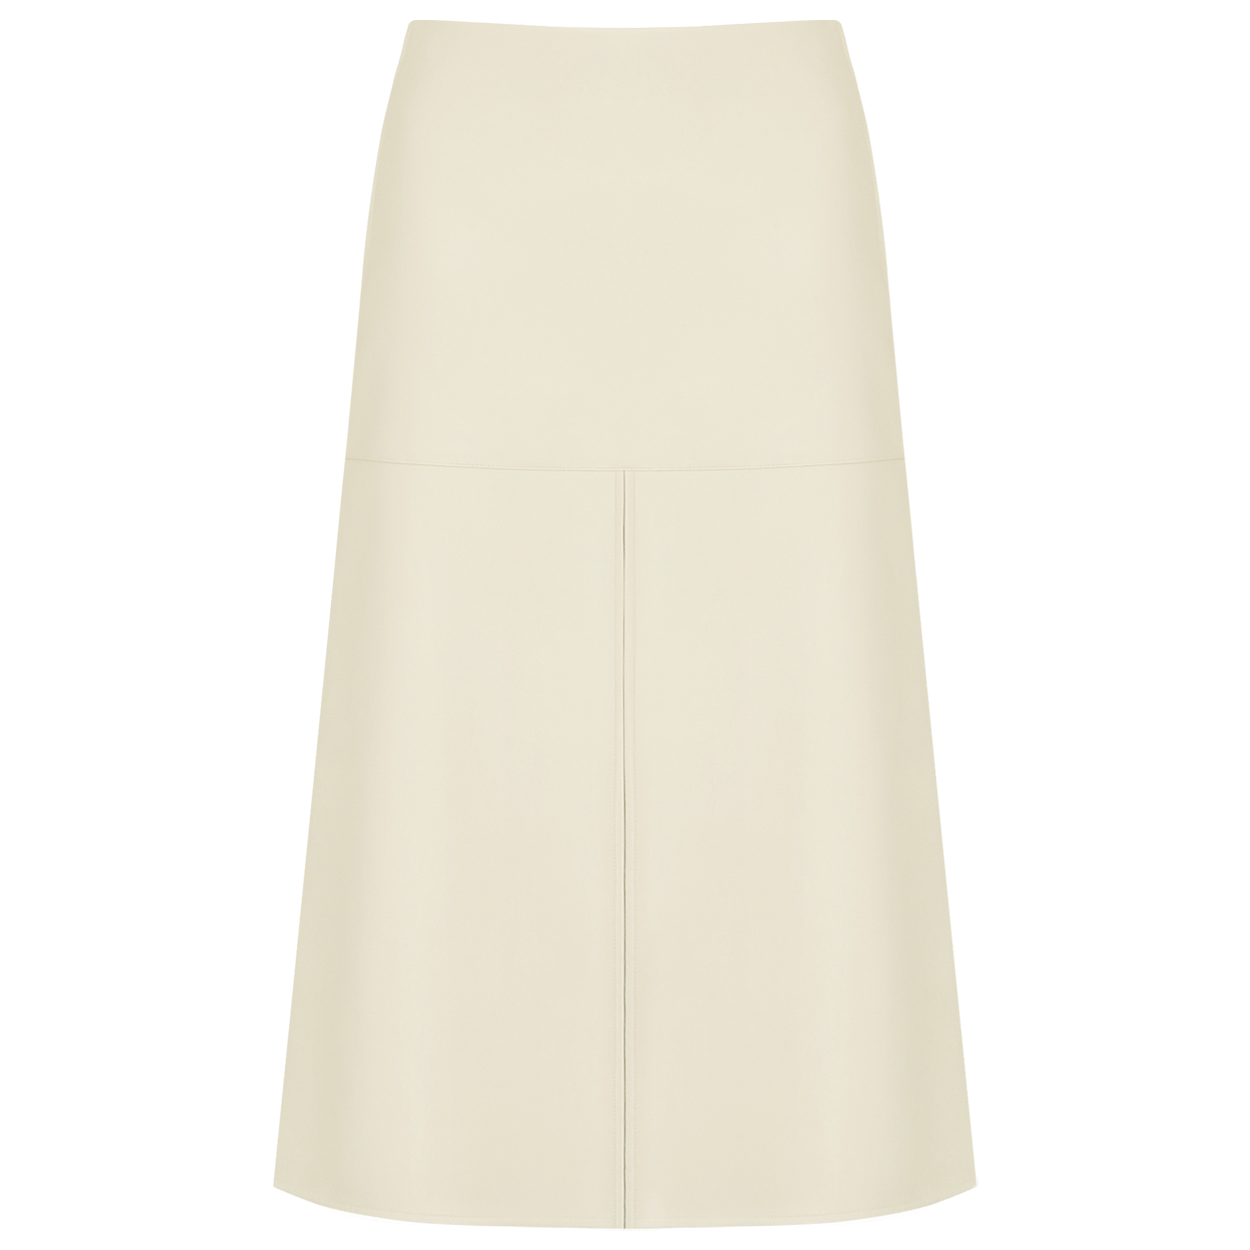 Butter skirt